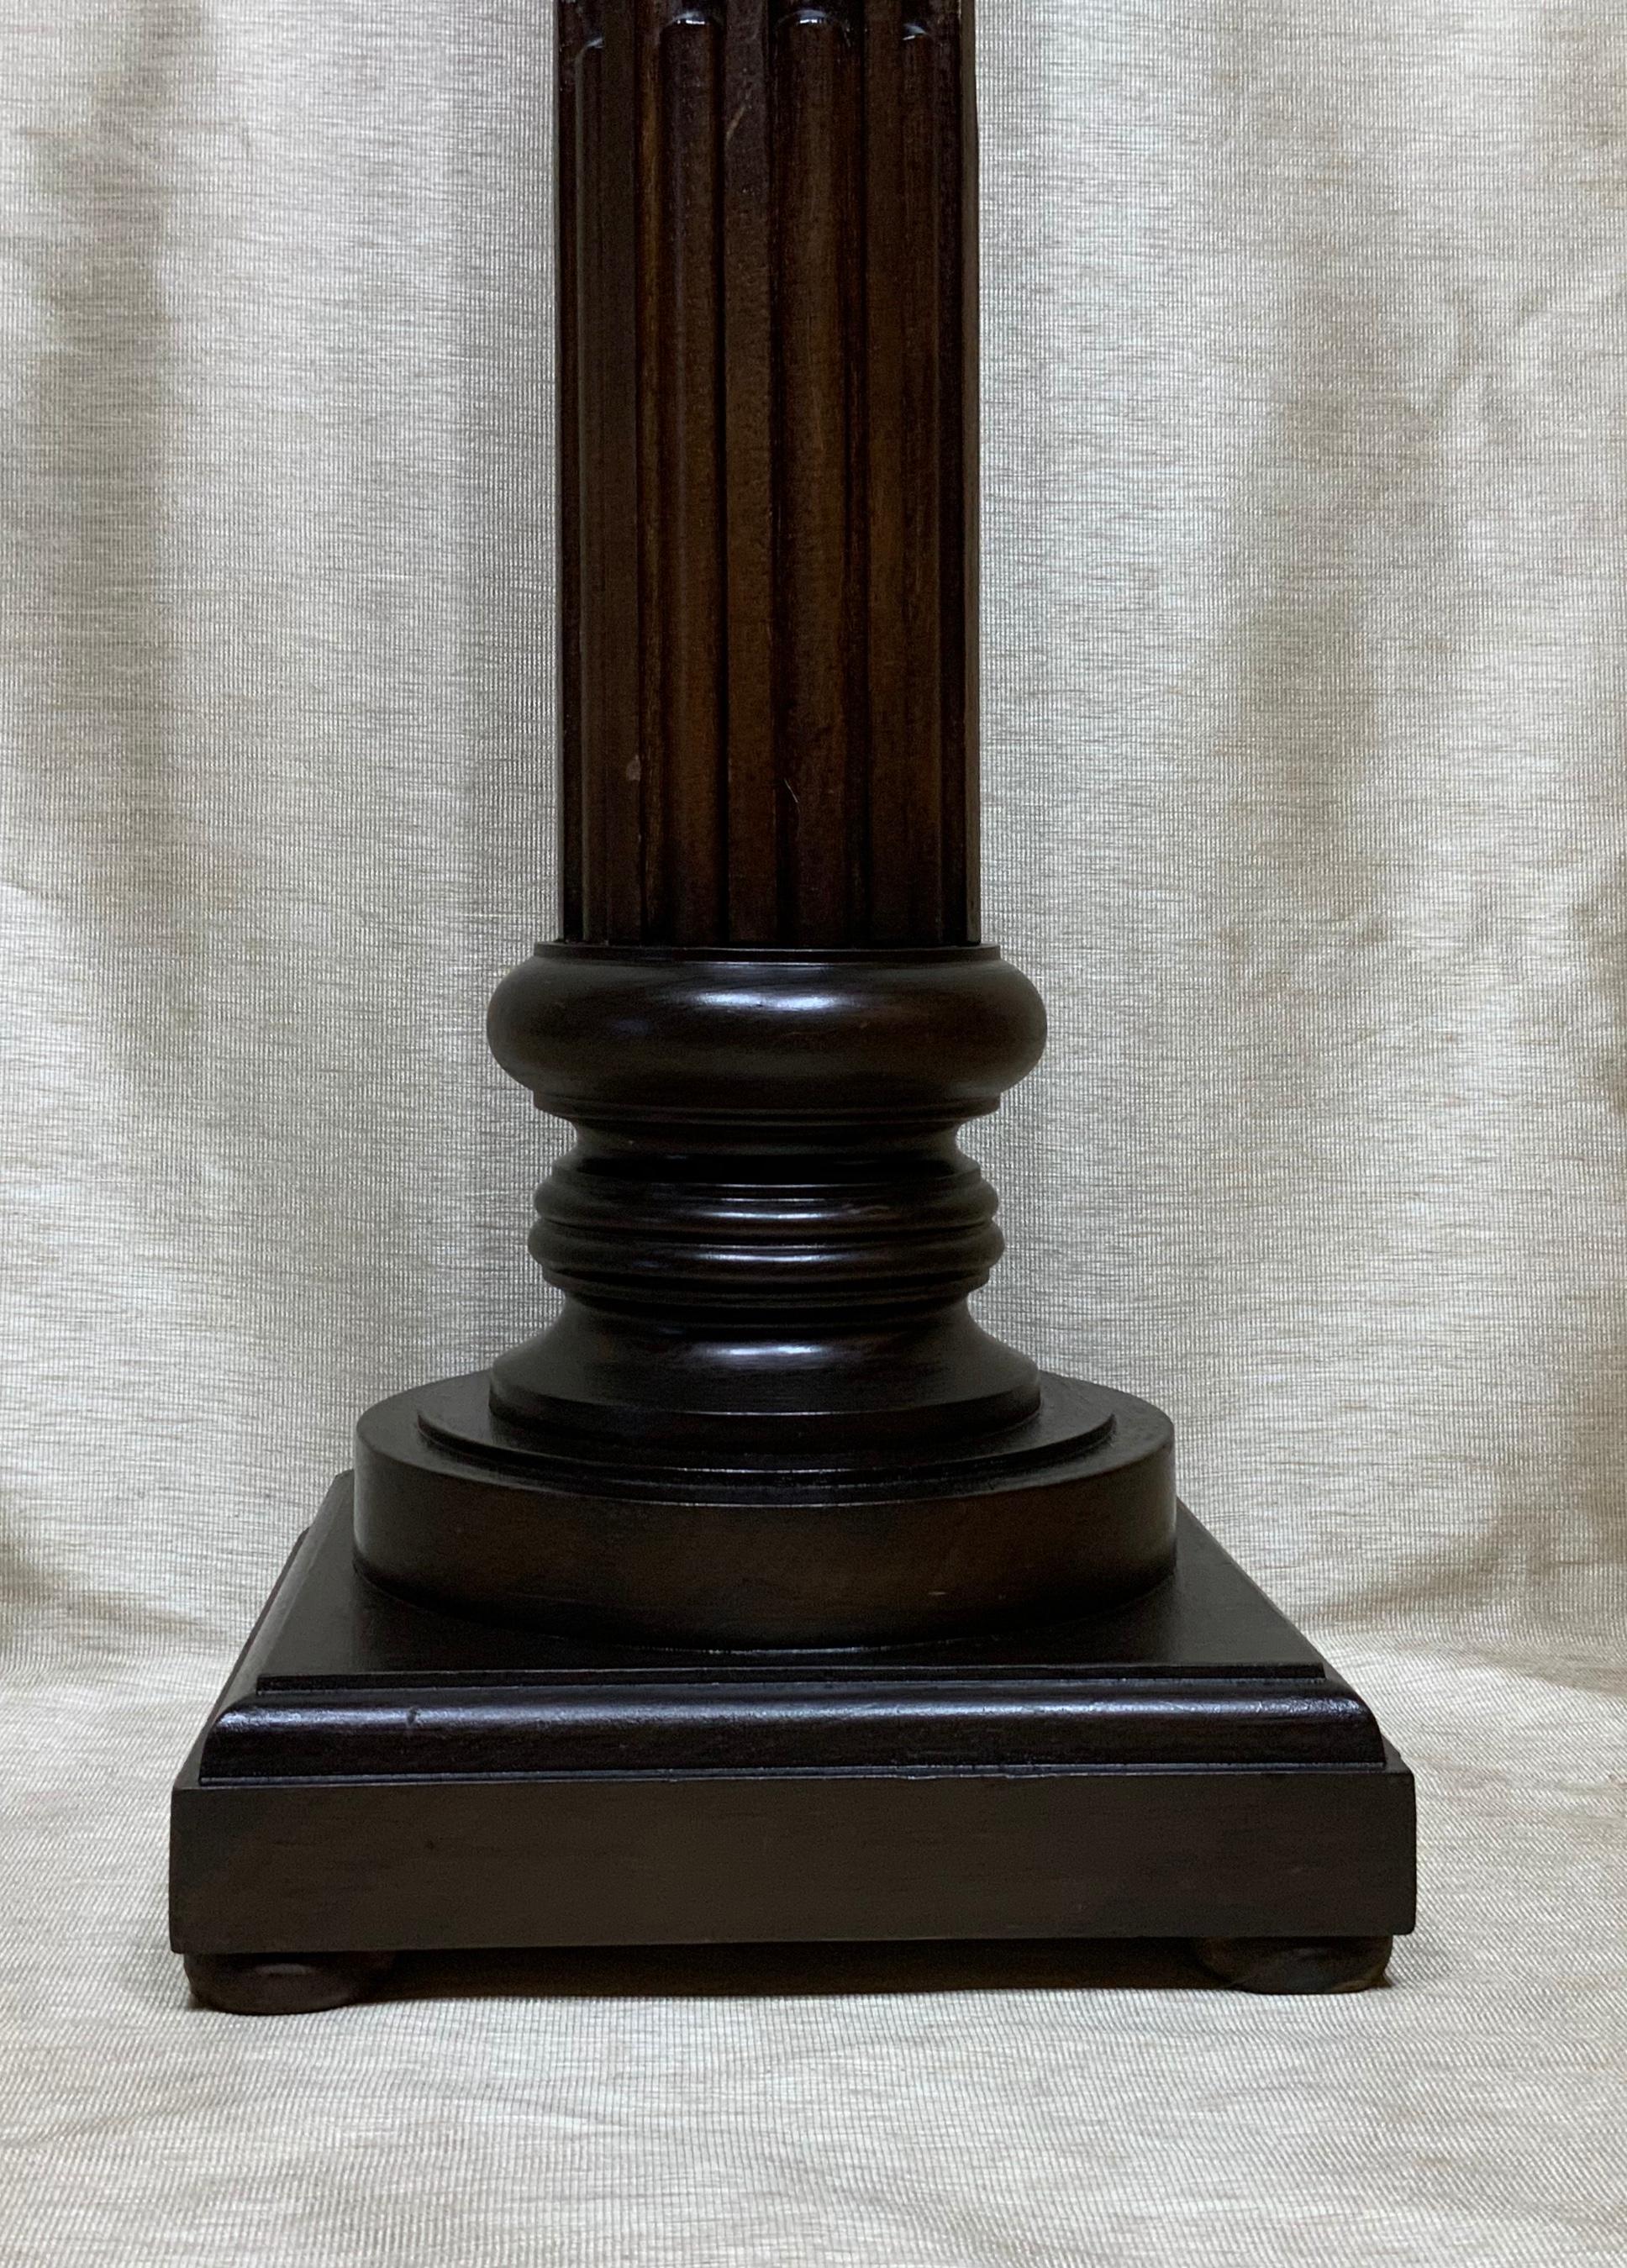 wood carved pedestal